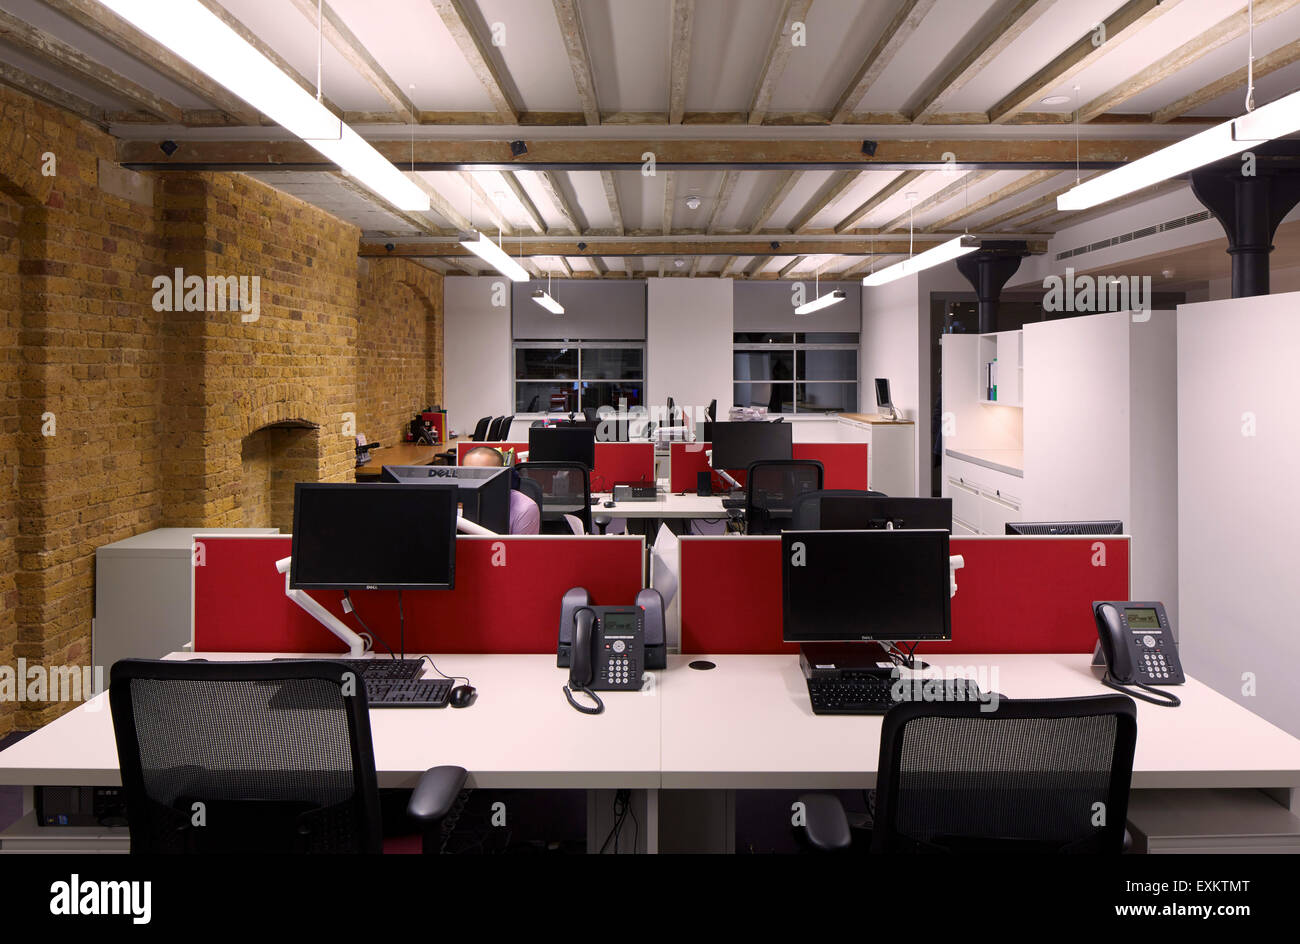 Verwaltungsbüro. Königliche Hochschule der Augenärzte, London, Vereinigtes Königreich. Architekt: Bennetts Associates Architects, 201 Stockfoto